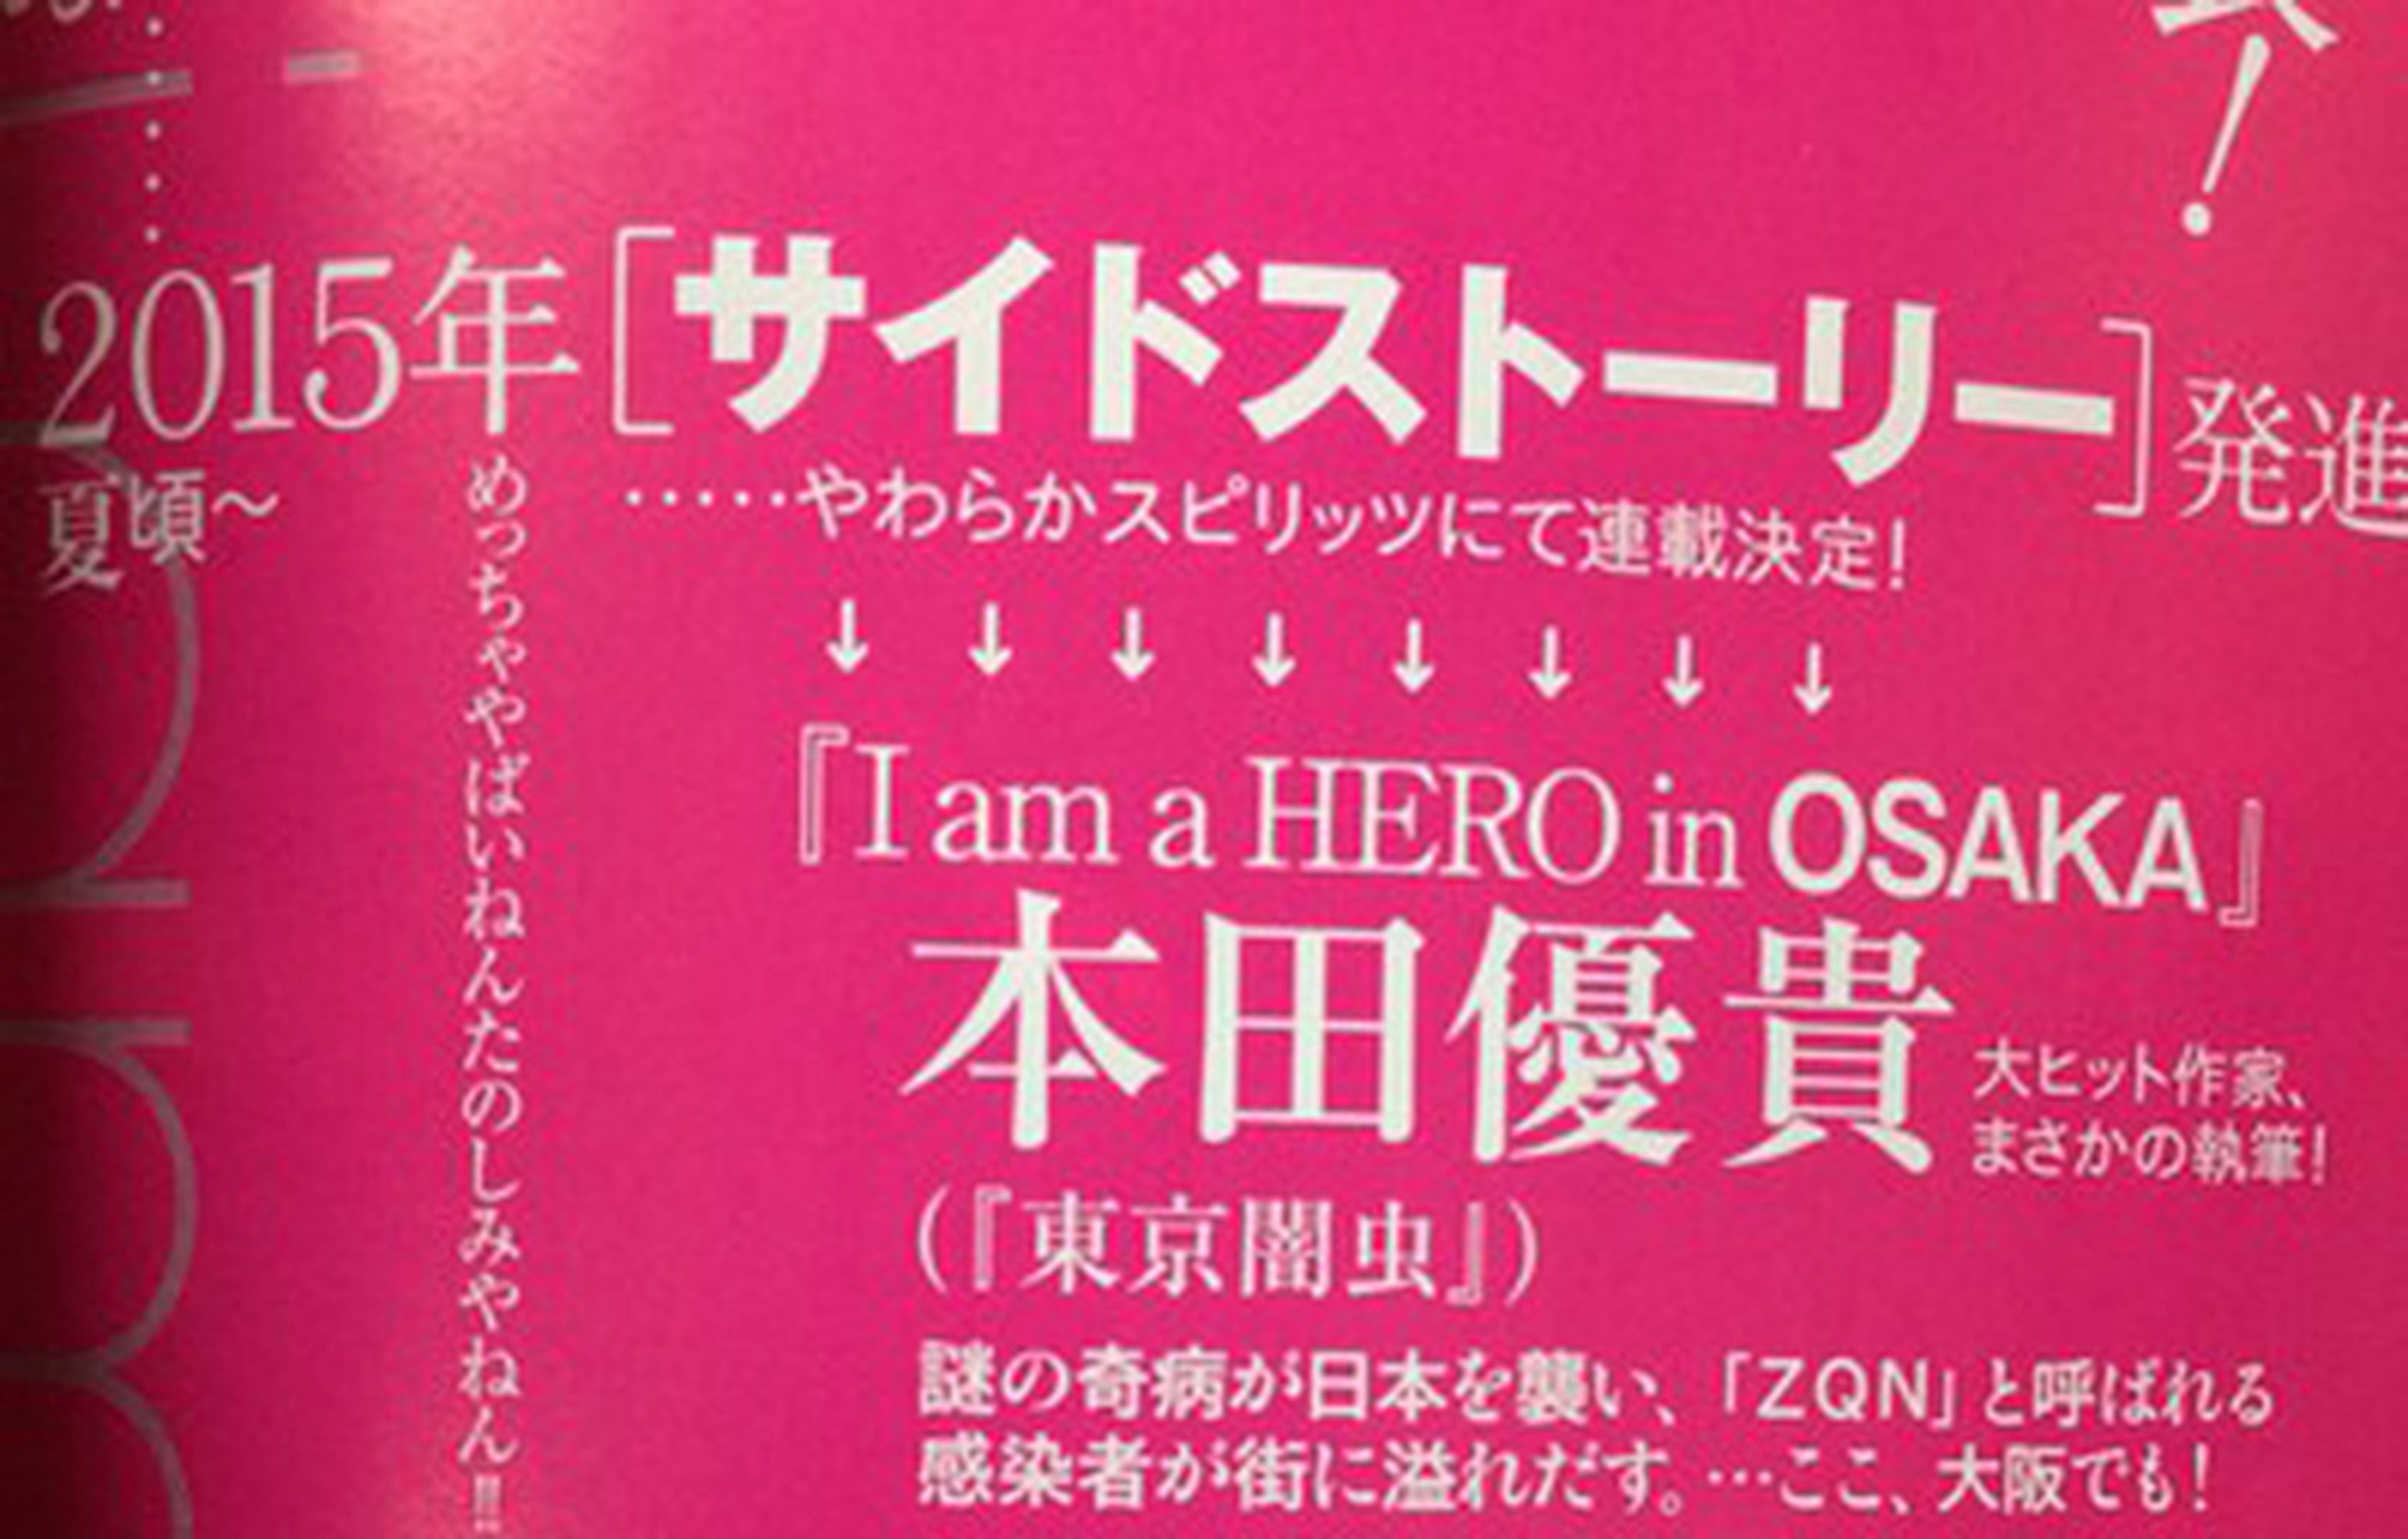 I am a Hero tendrá un spin-off situado en Osaka